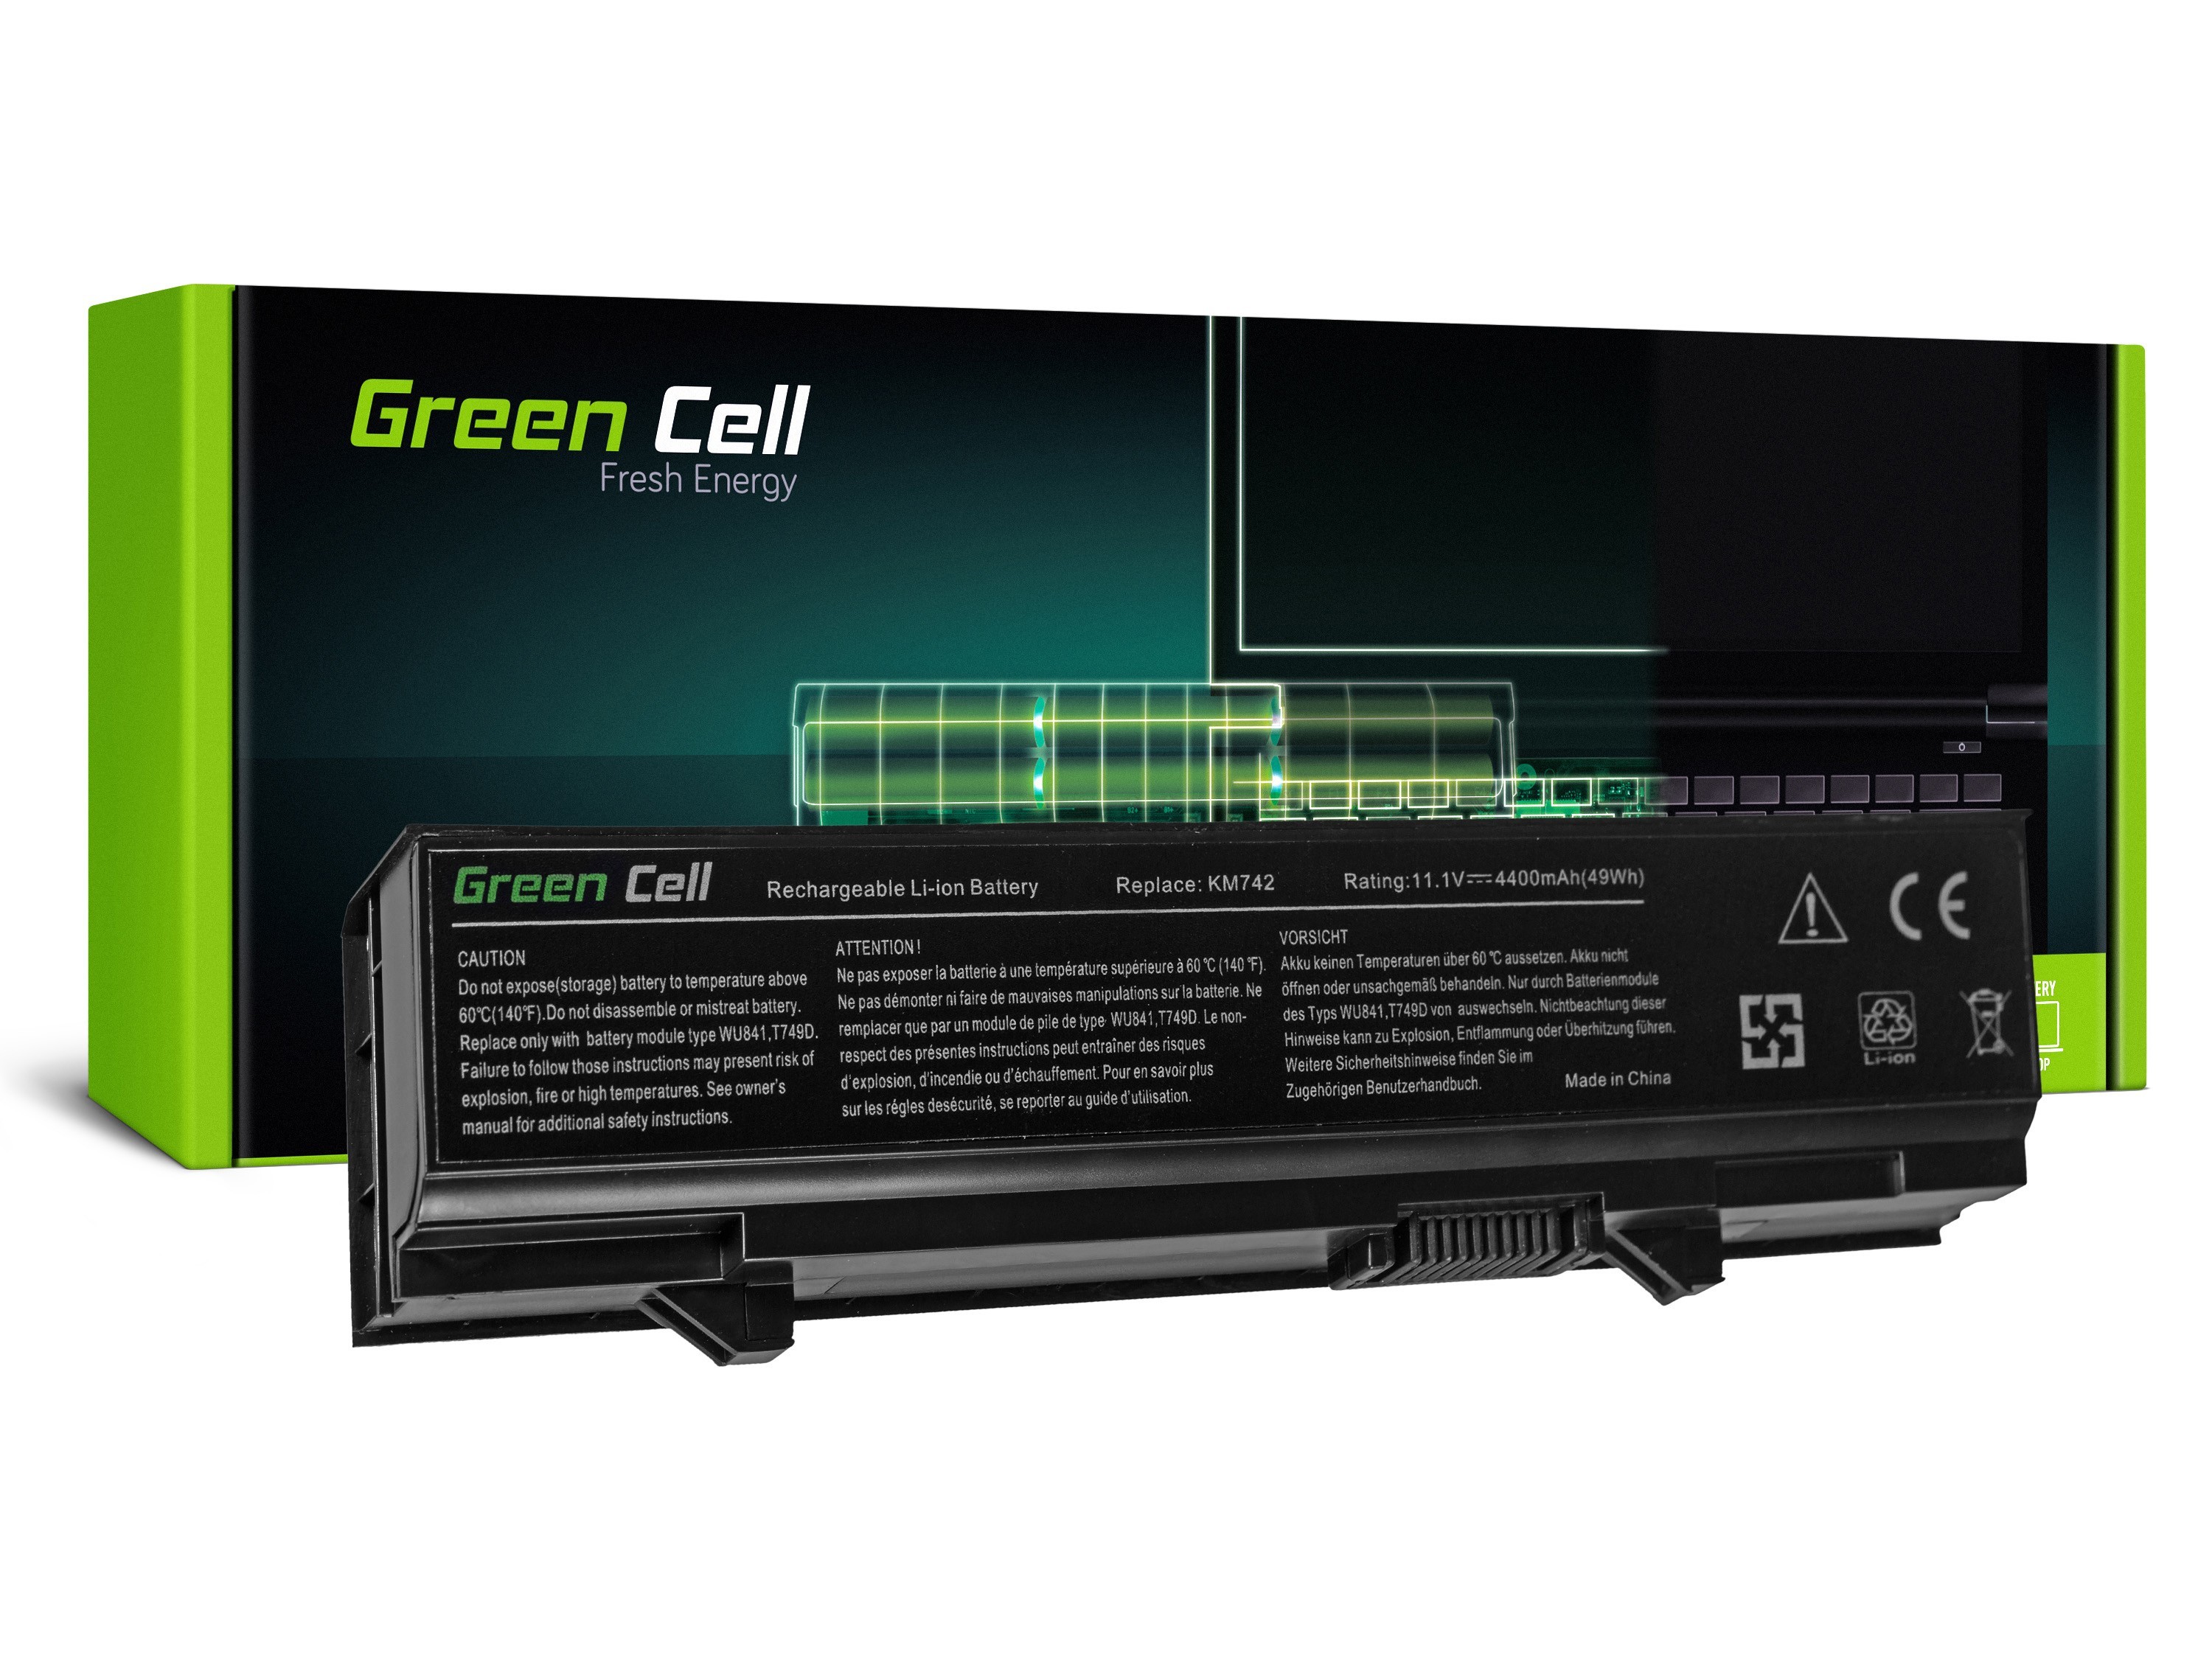 Green Cell laptop batteri tll Dell Latitude E5400 E5410 E5500 E5510